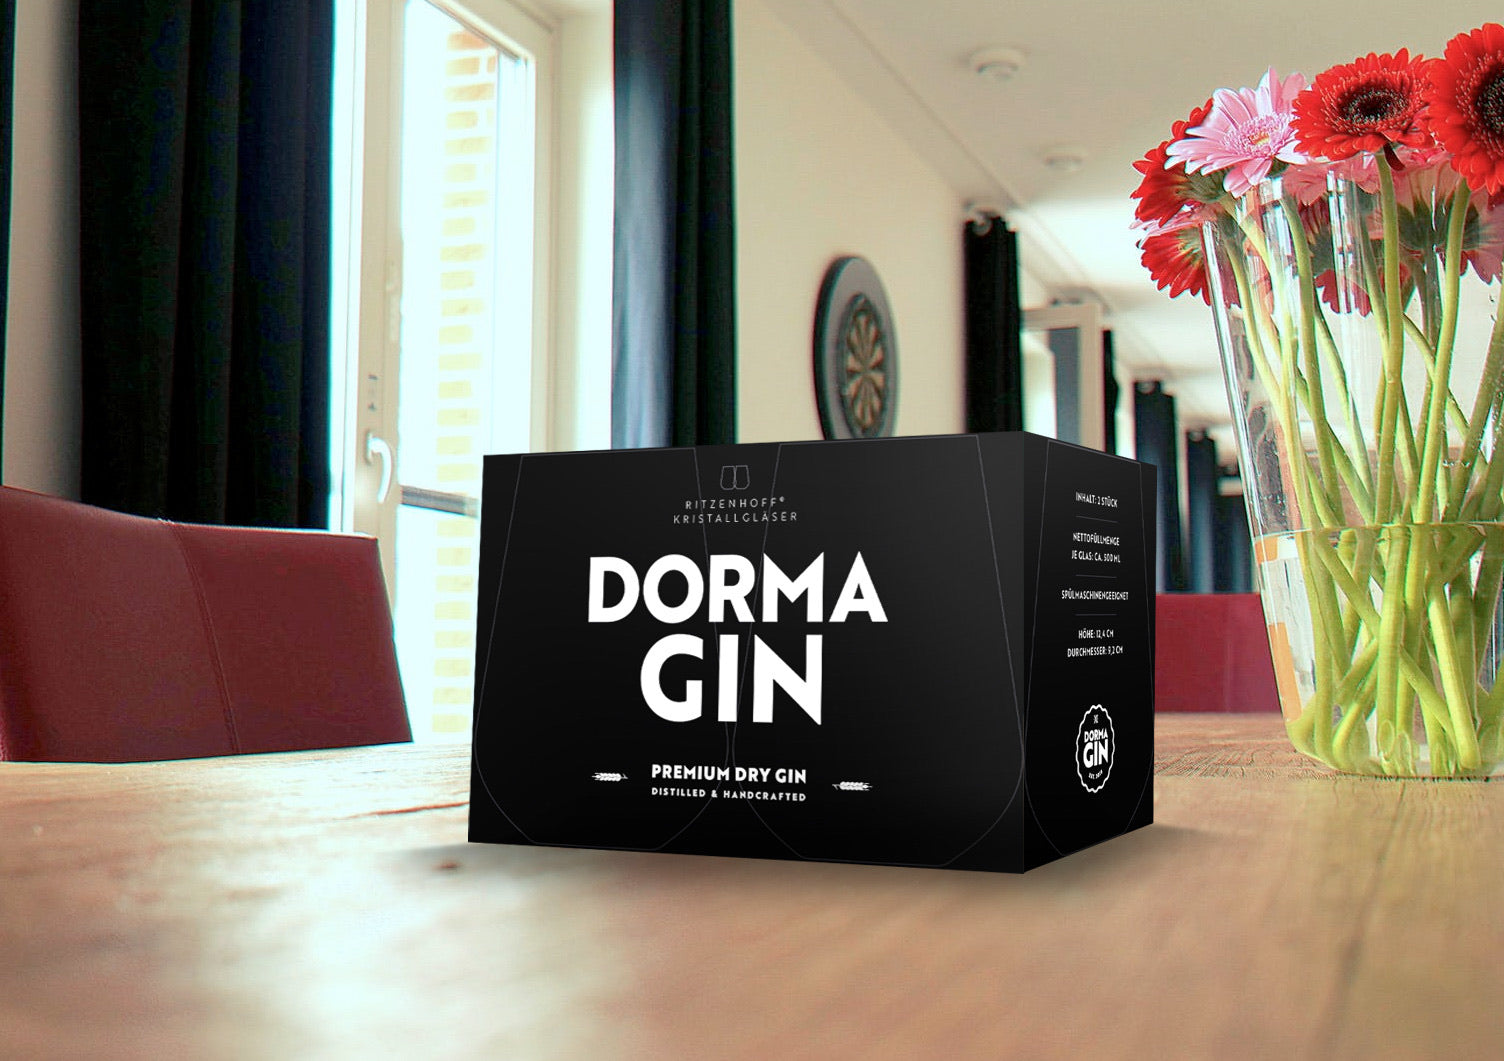 DormaGIN Geschenk Set - 1 x DormaGIN Dry Gin 50cl + 2 x Ritzenhoff Glas Set